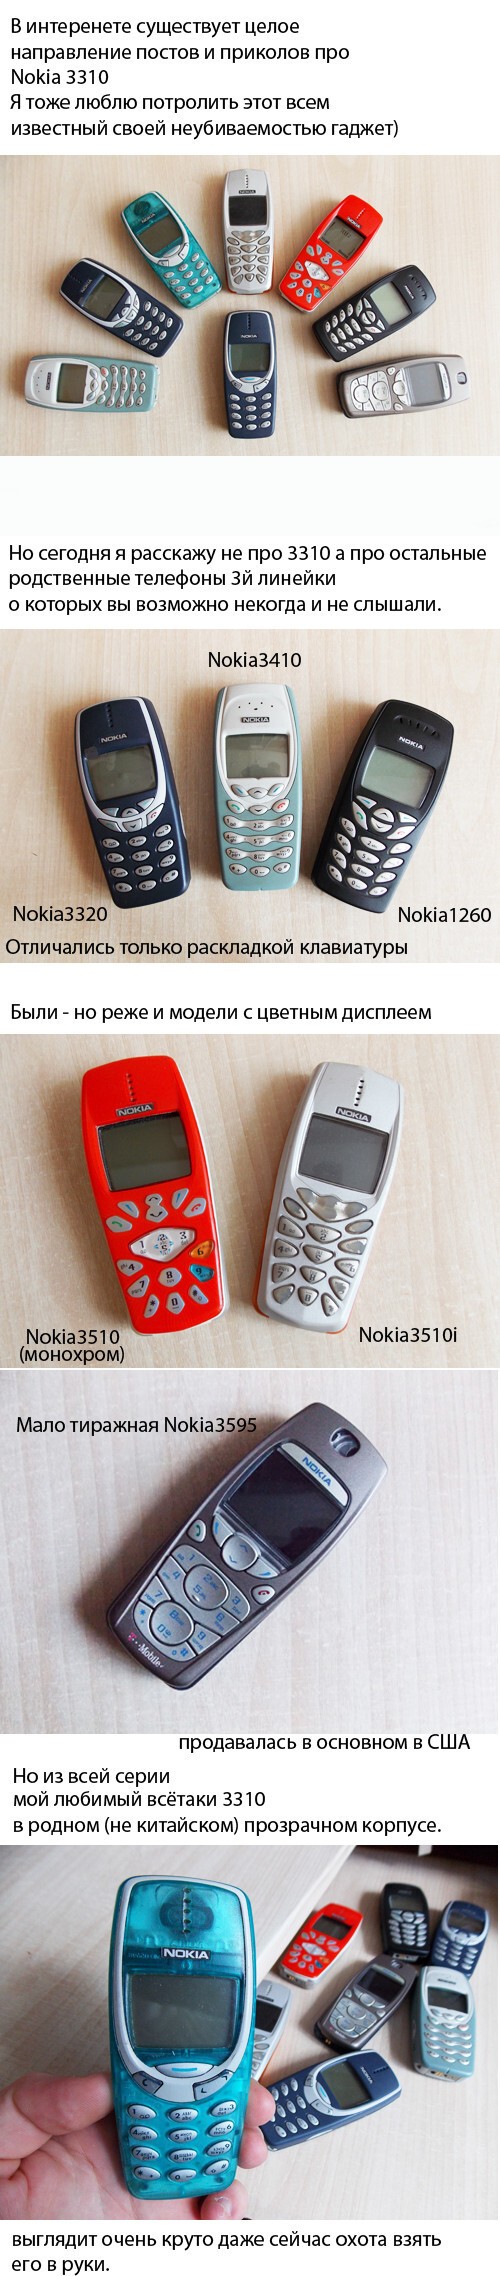 Не обижайте этого зверька Nokia 3310